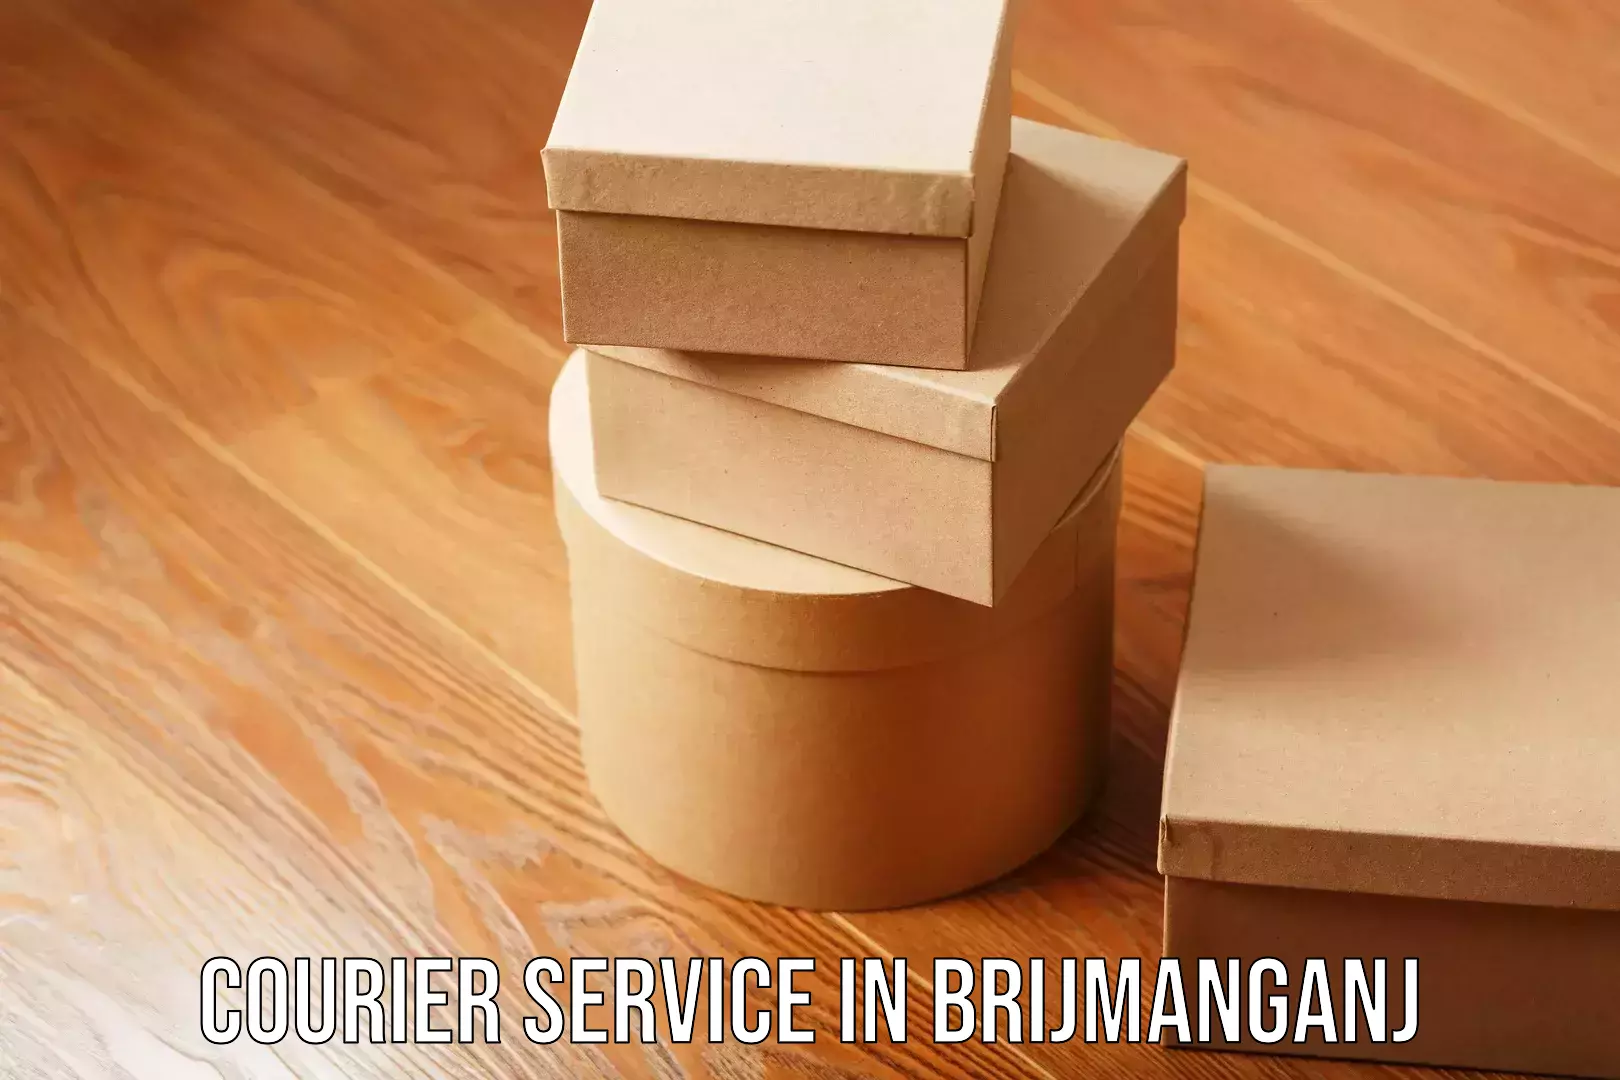 Express logistics service in Brijmanganj